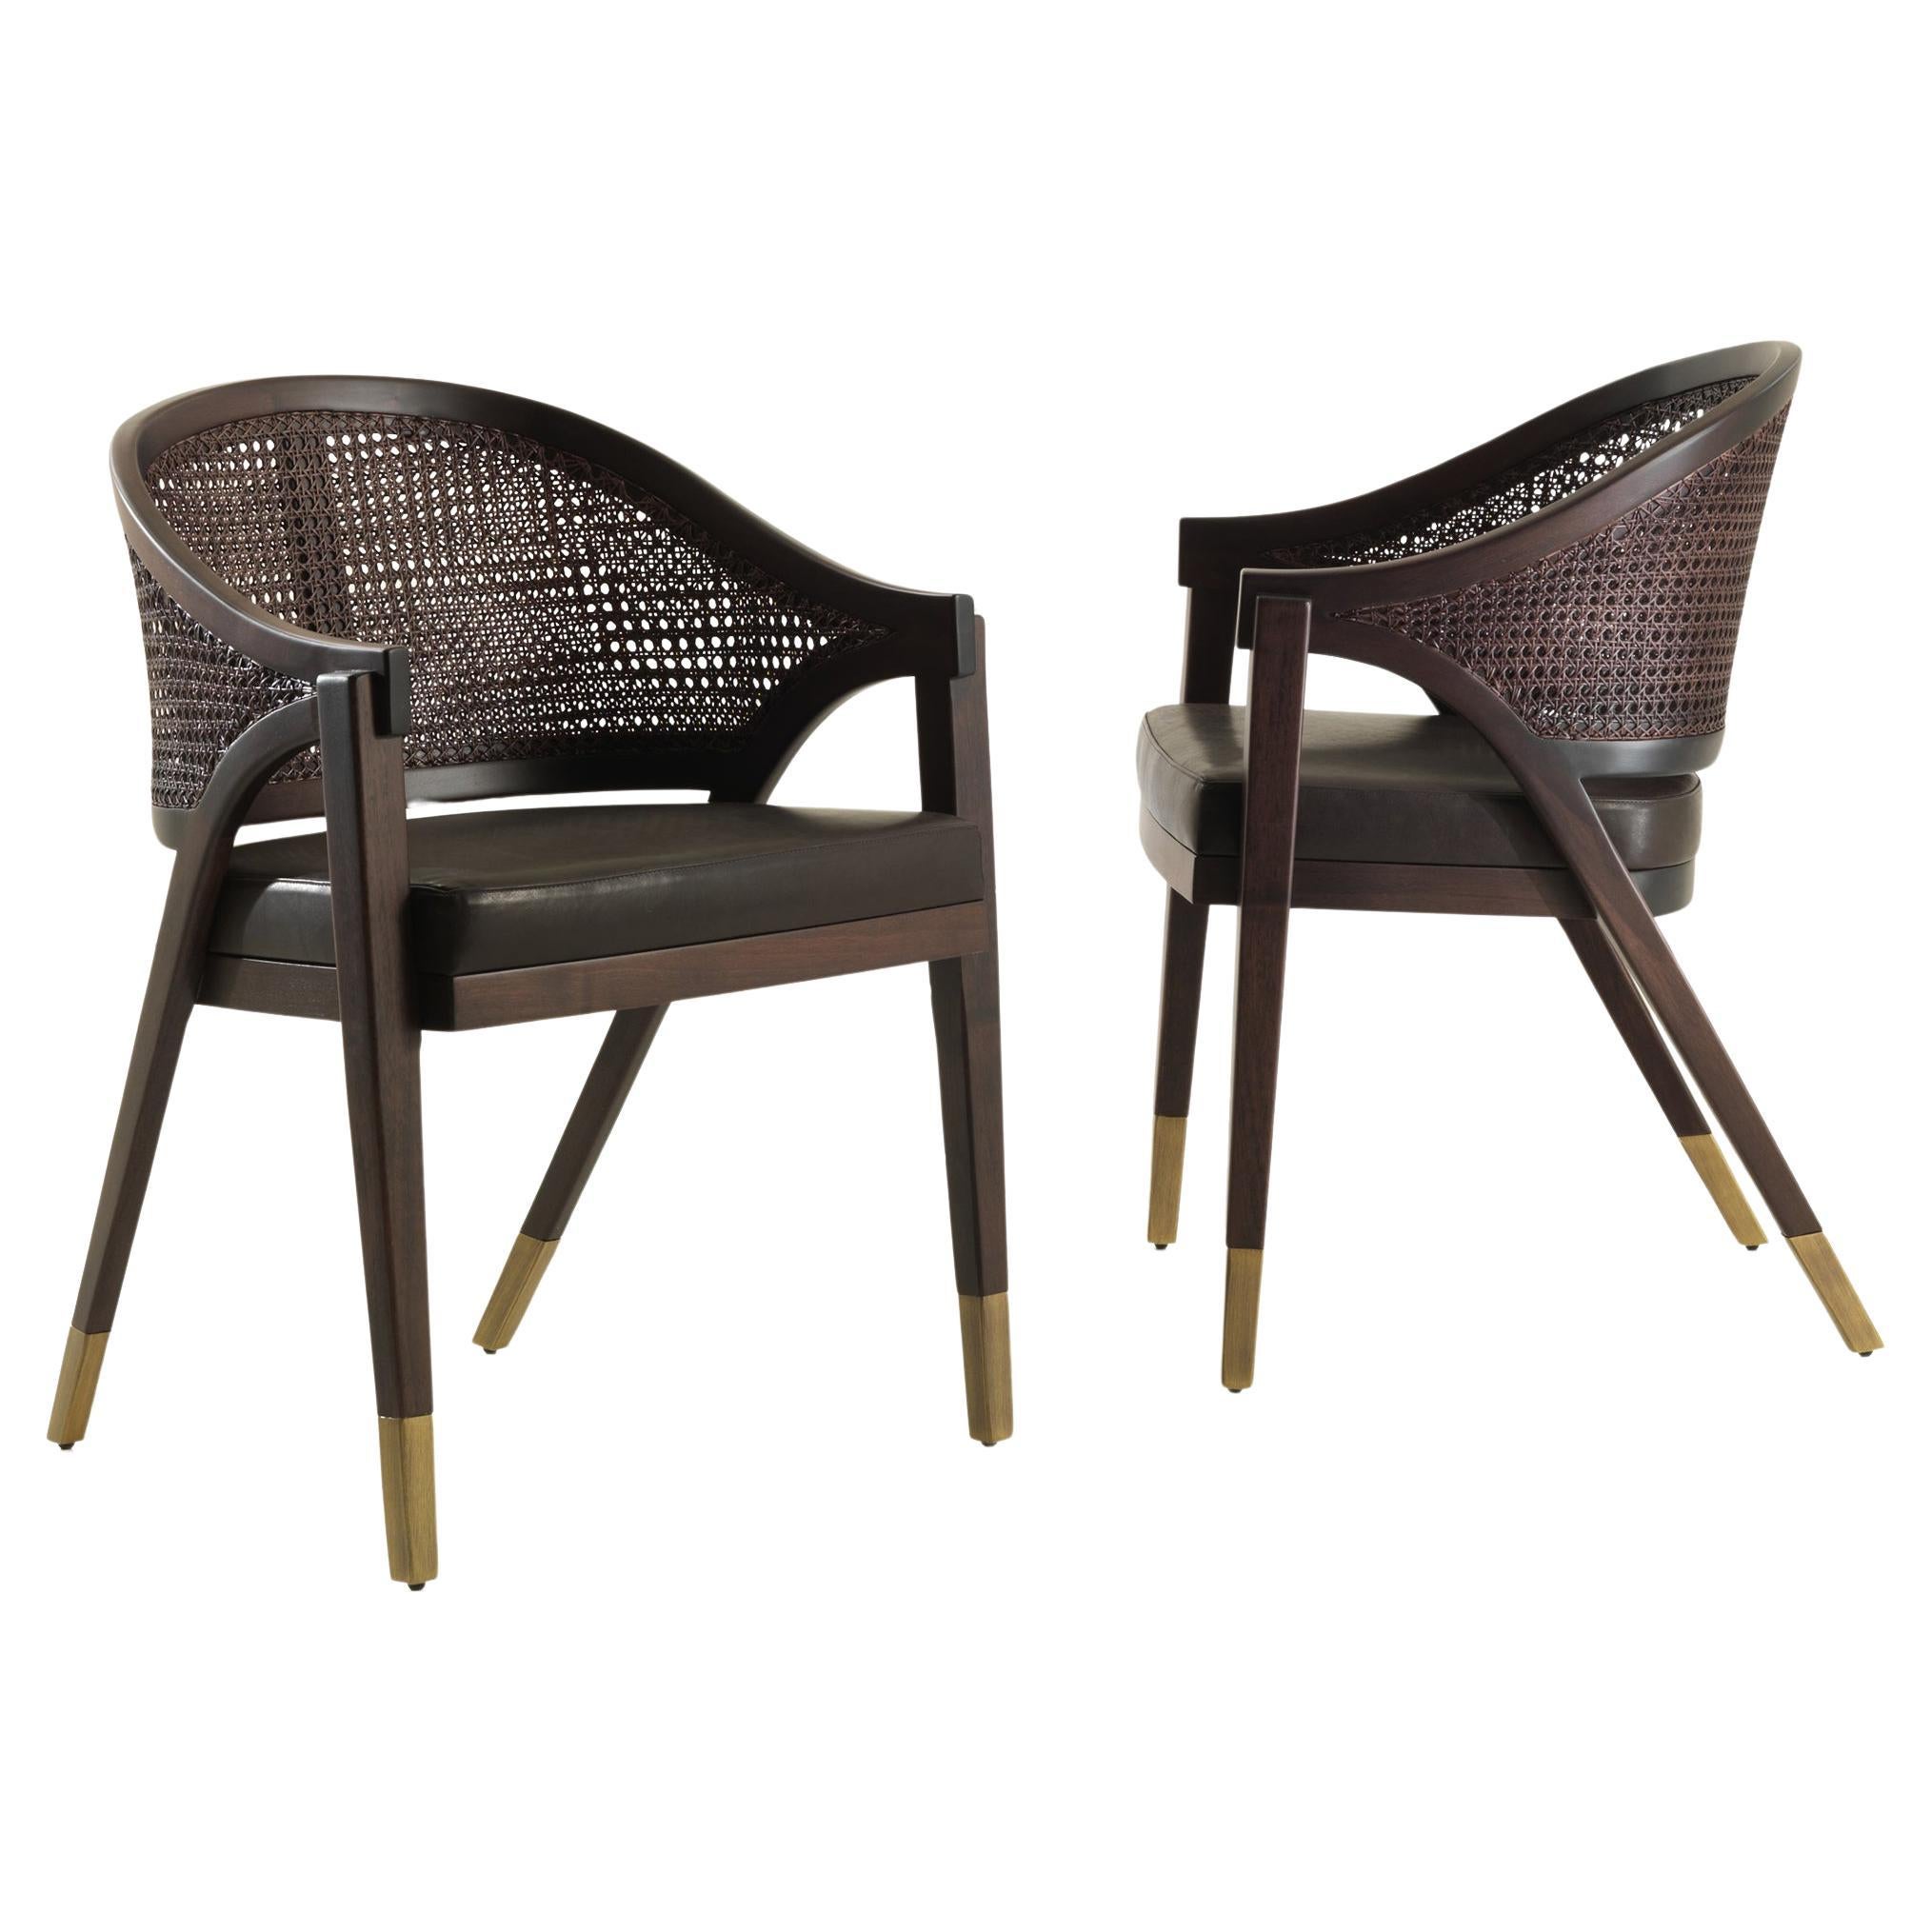 Sabaudia Brauner geschwungener Sessel aus Nussbaum mit Rohrrücken und bronzierten Metallspitzen